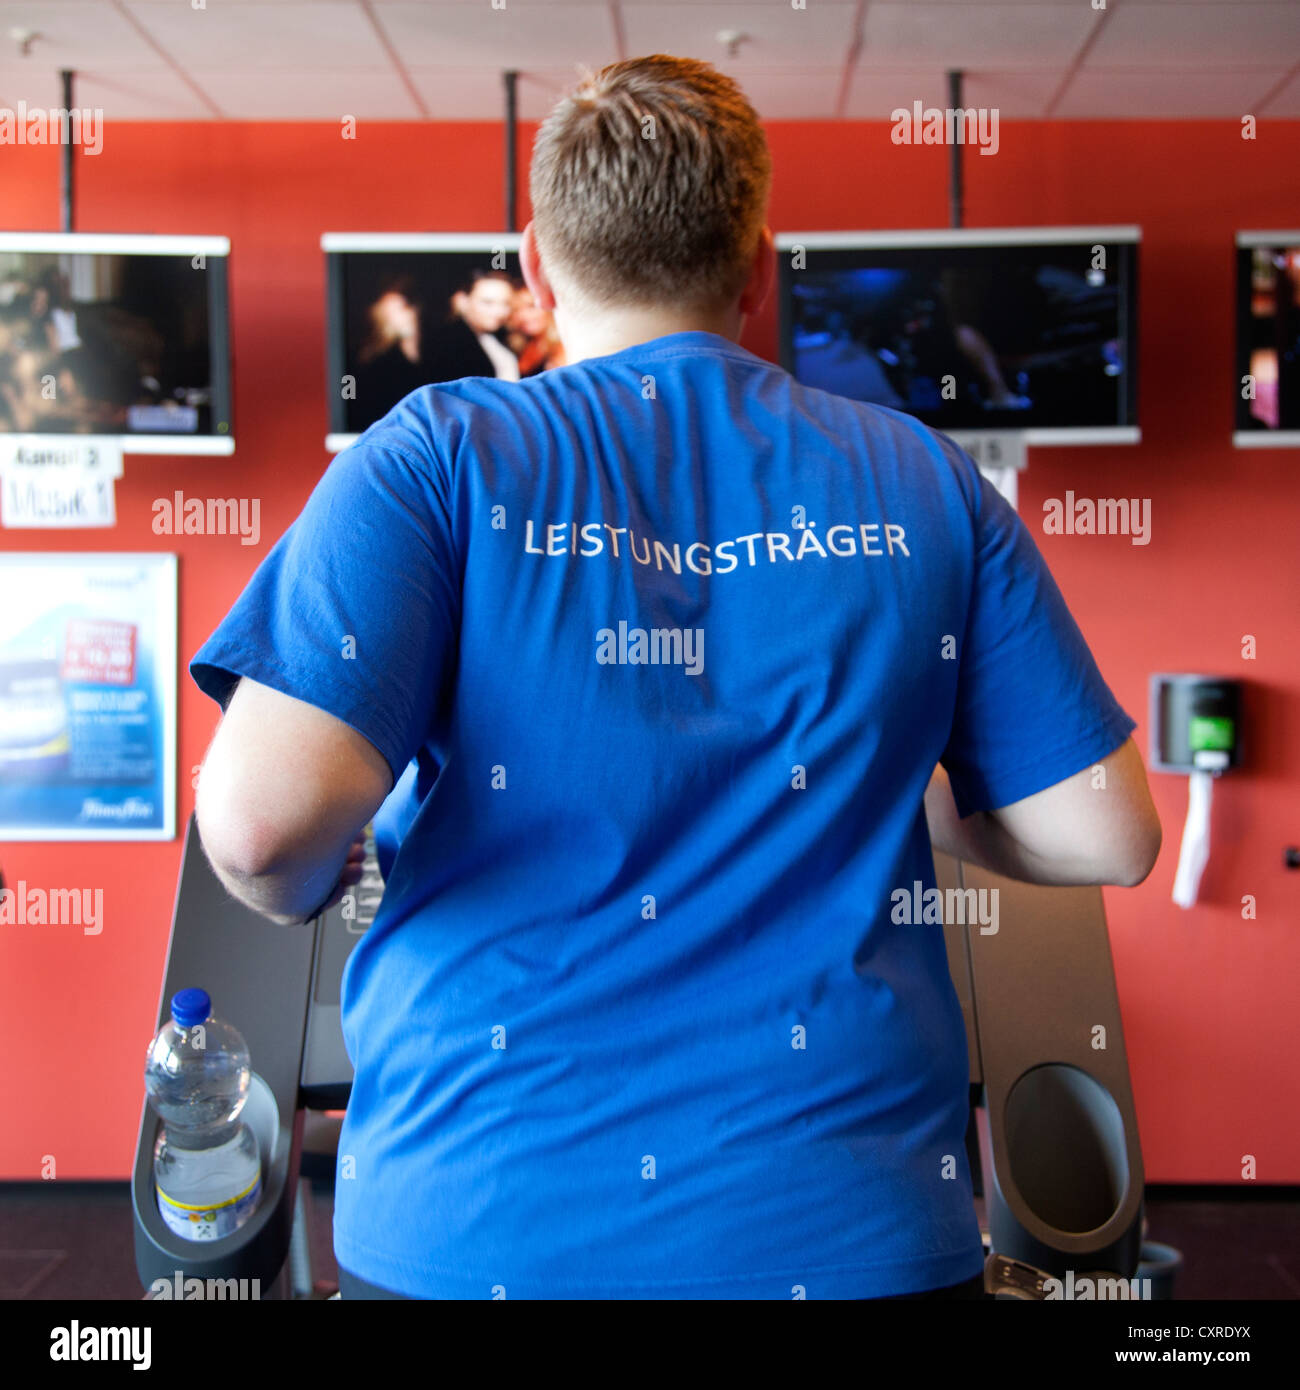 Athlète portant un t-shirt, 'Leistungstraeger lettrage', l'allemand pour "Meilleure performance', courir sur un tapis roulant, un centre de remise en forme Banque D'Images